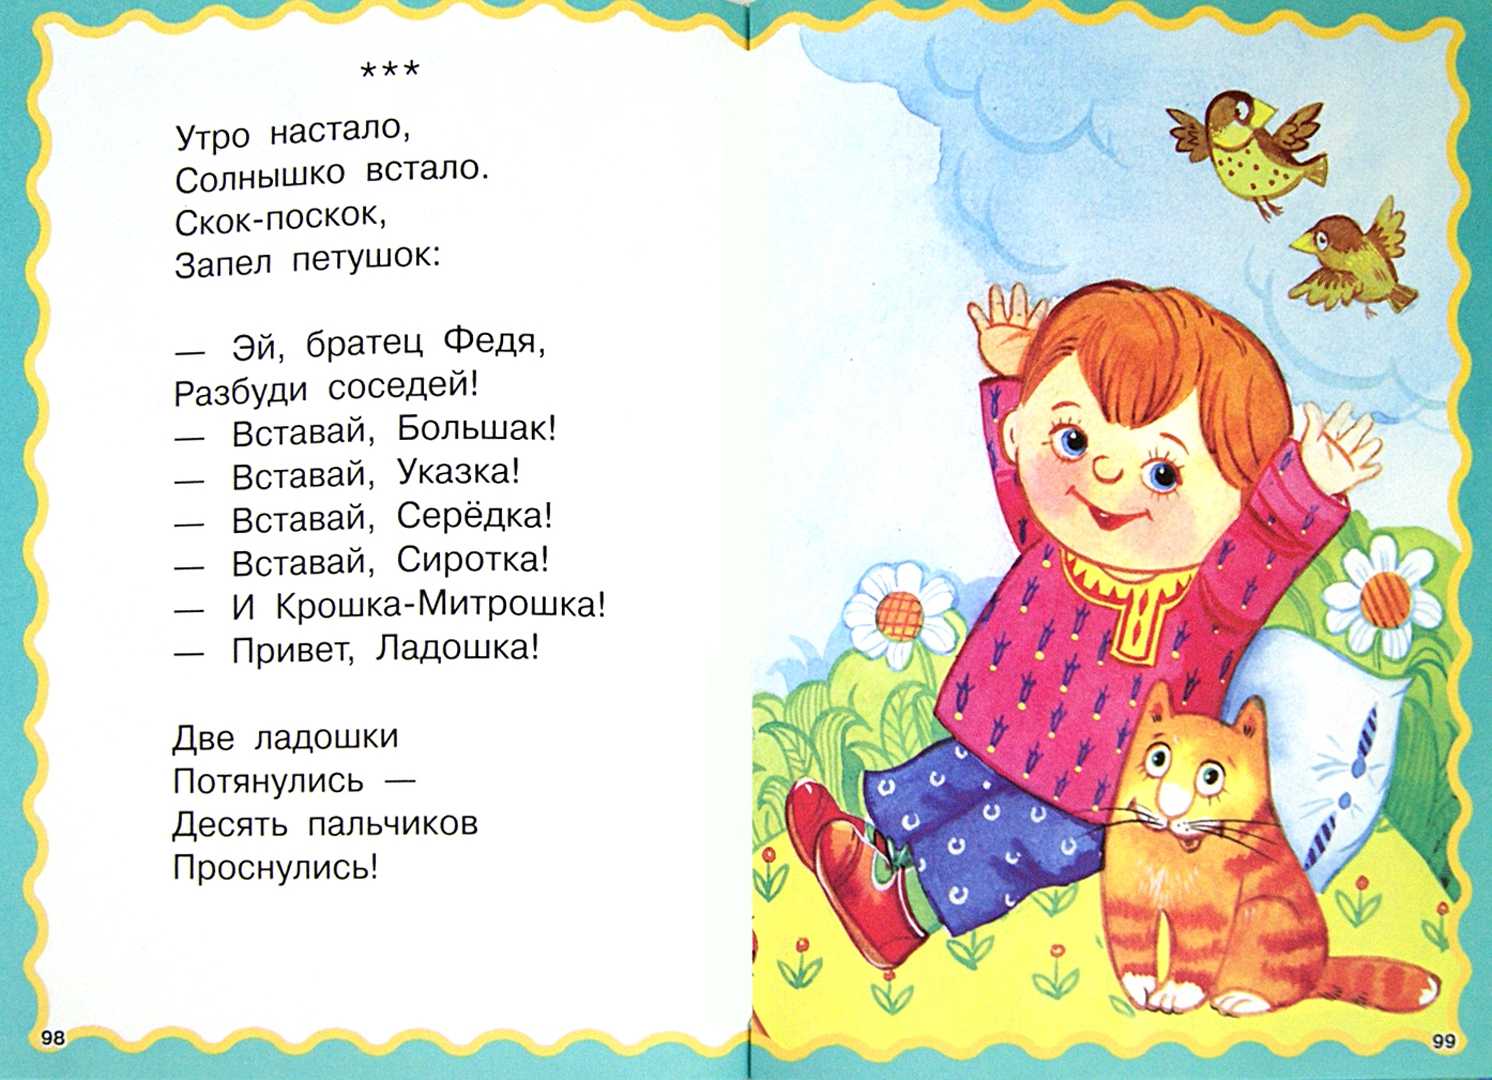 Песни прибаутки. Потешки. Детские потешки. Стишки прибаутки для детей. Русские потешки для детей.